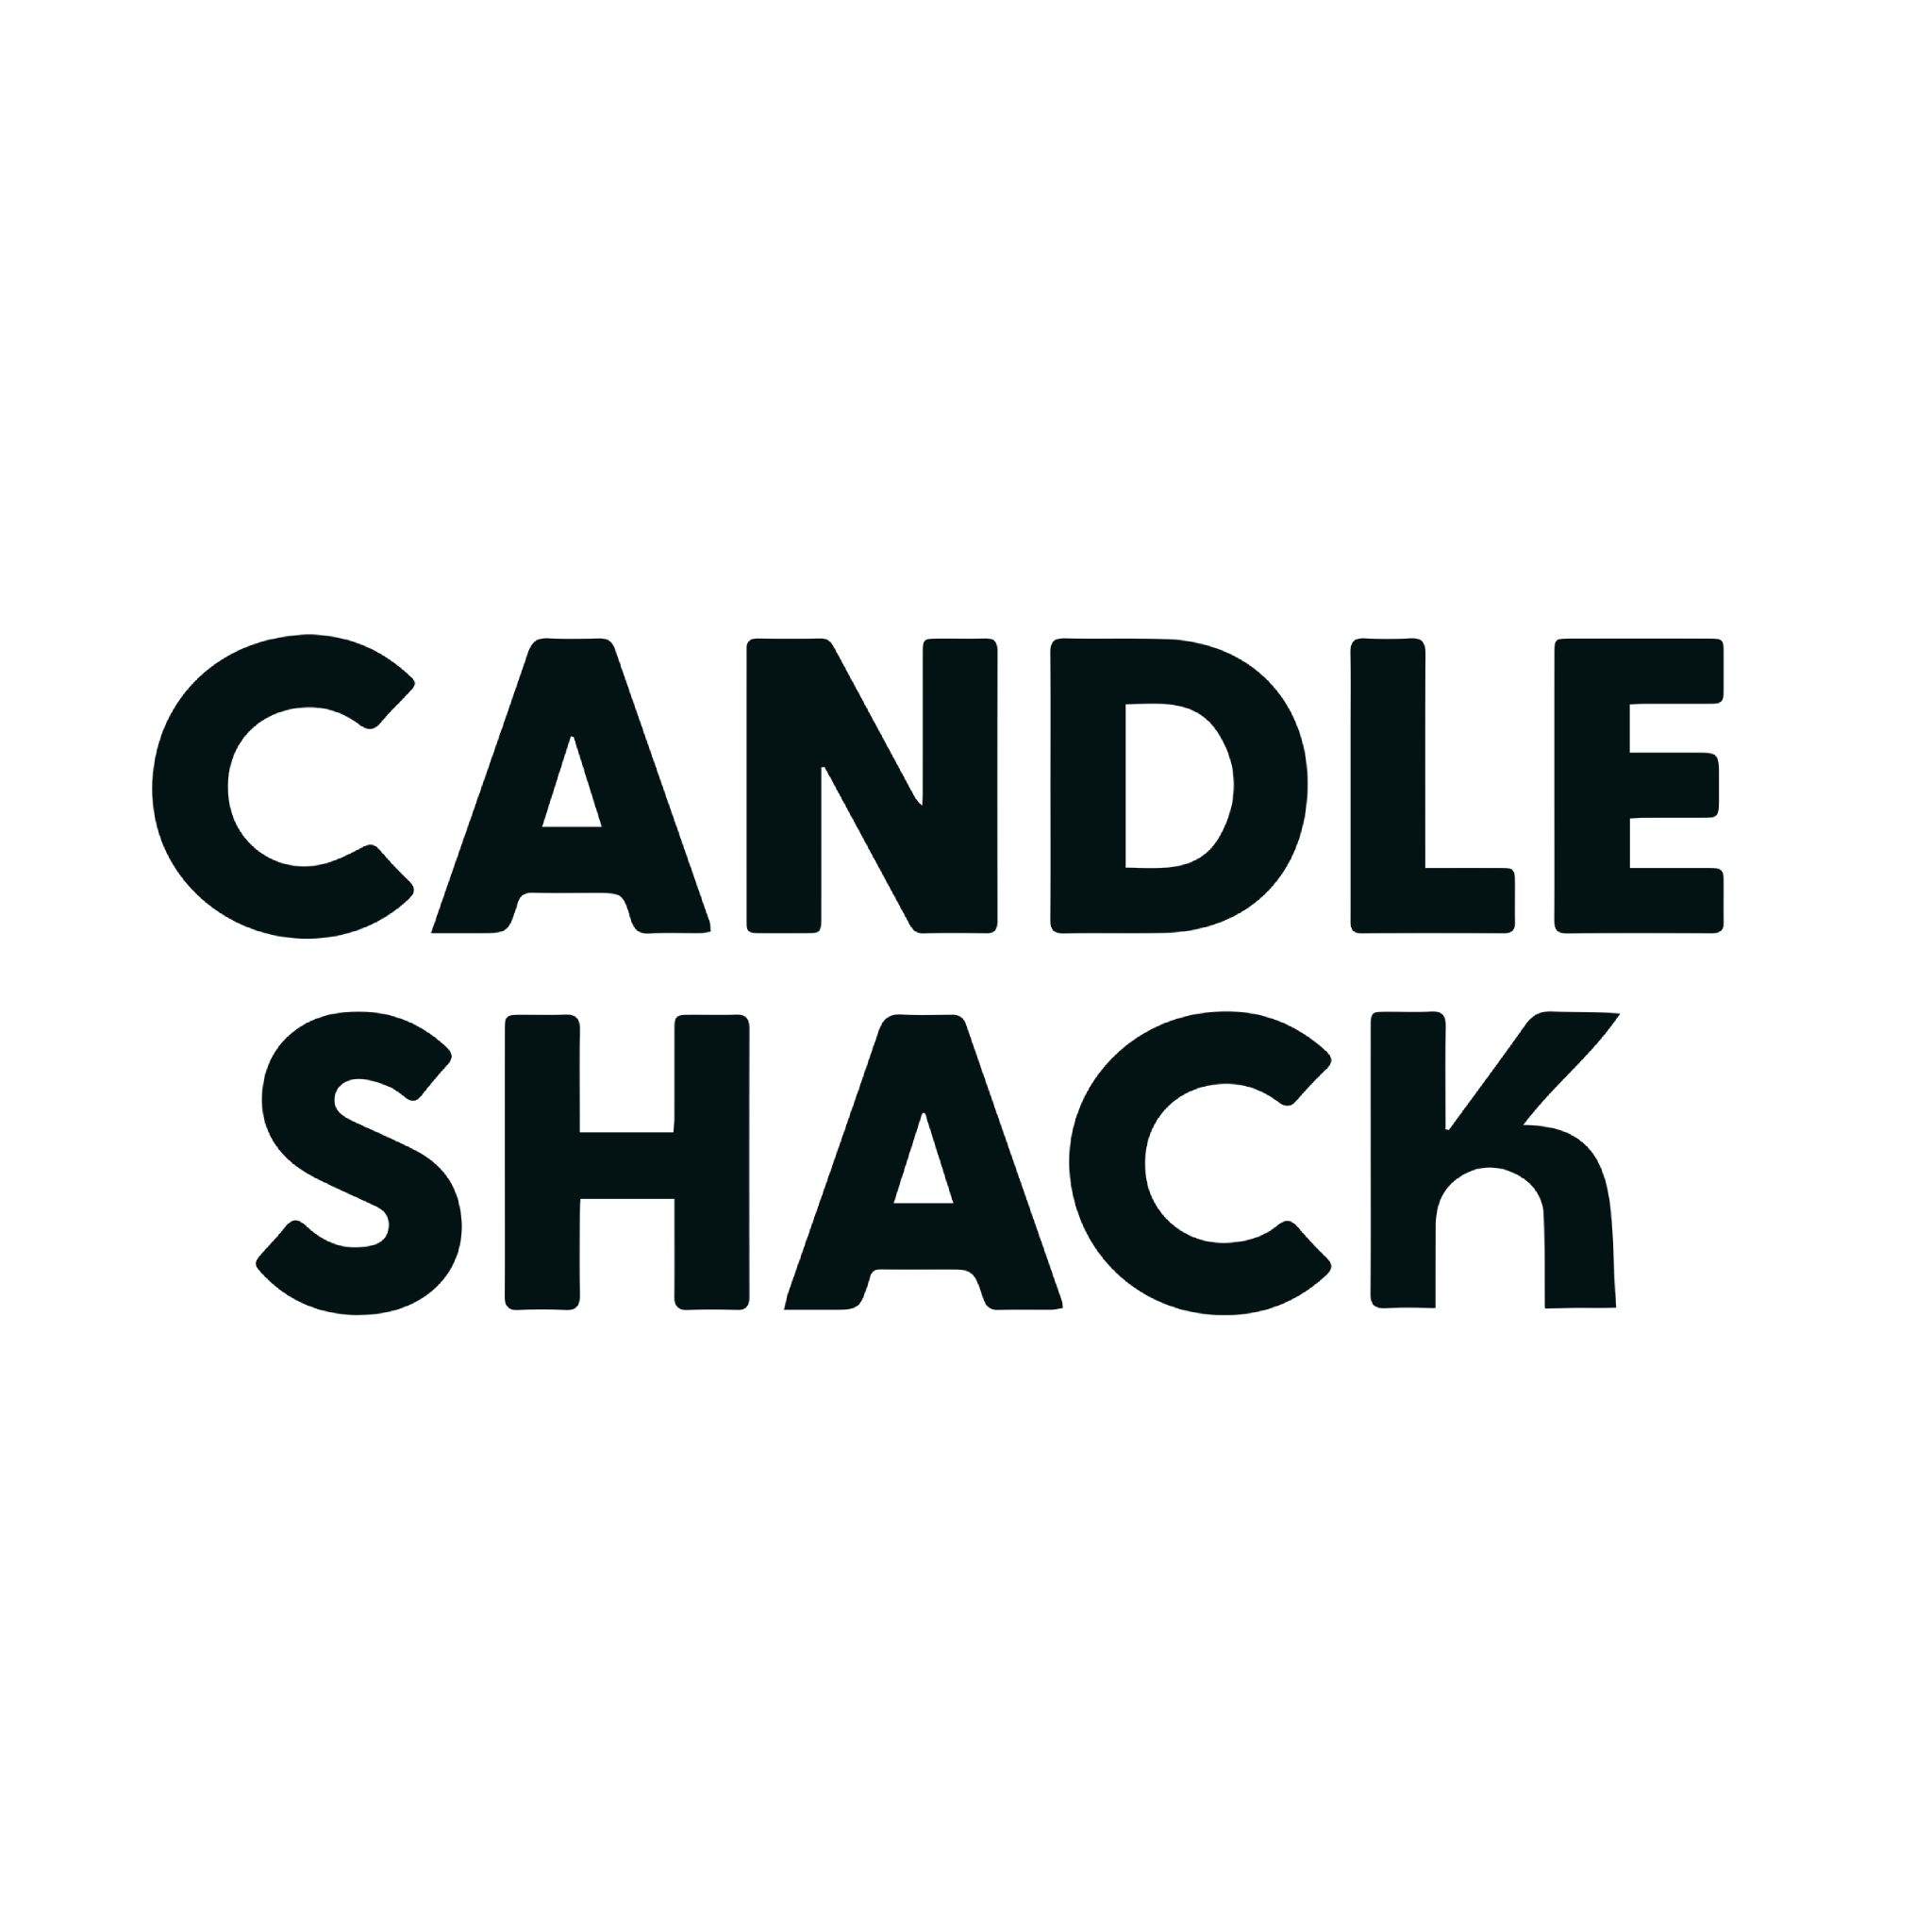 Candle Shack logo